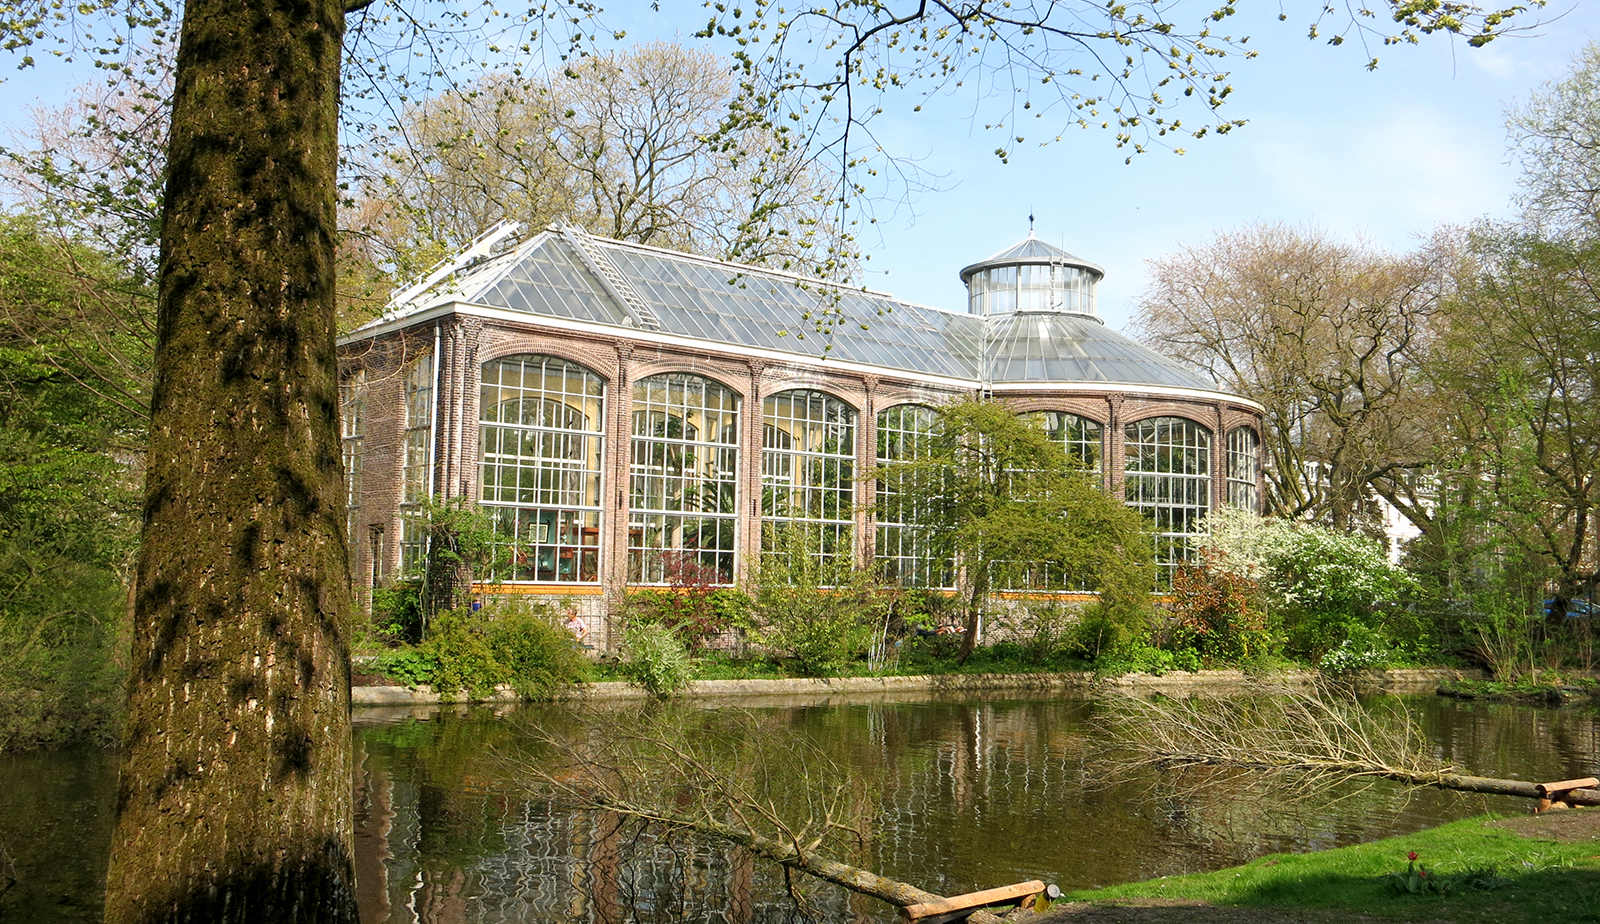 Hortus Botanicus Amsterdam - Discover the botanical garden - Holland.com